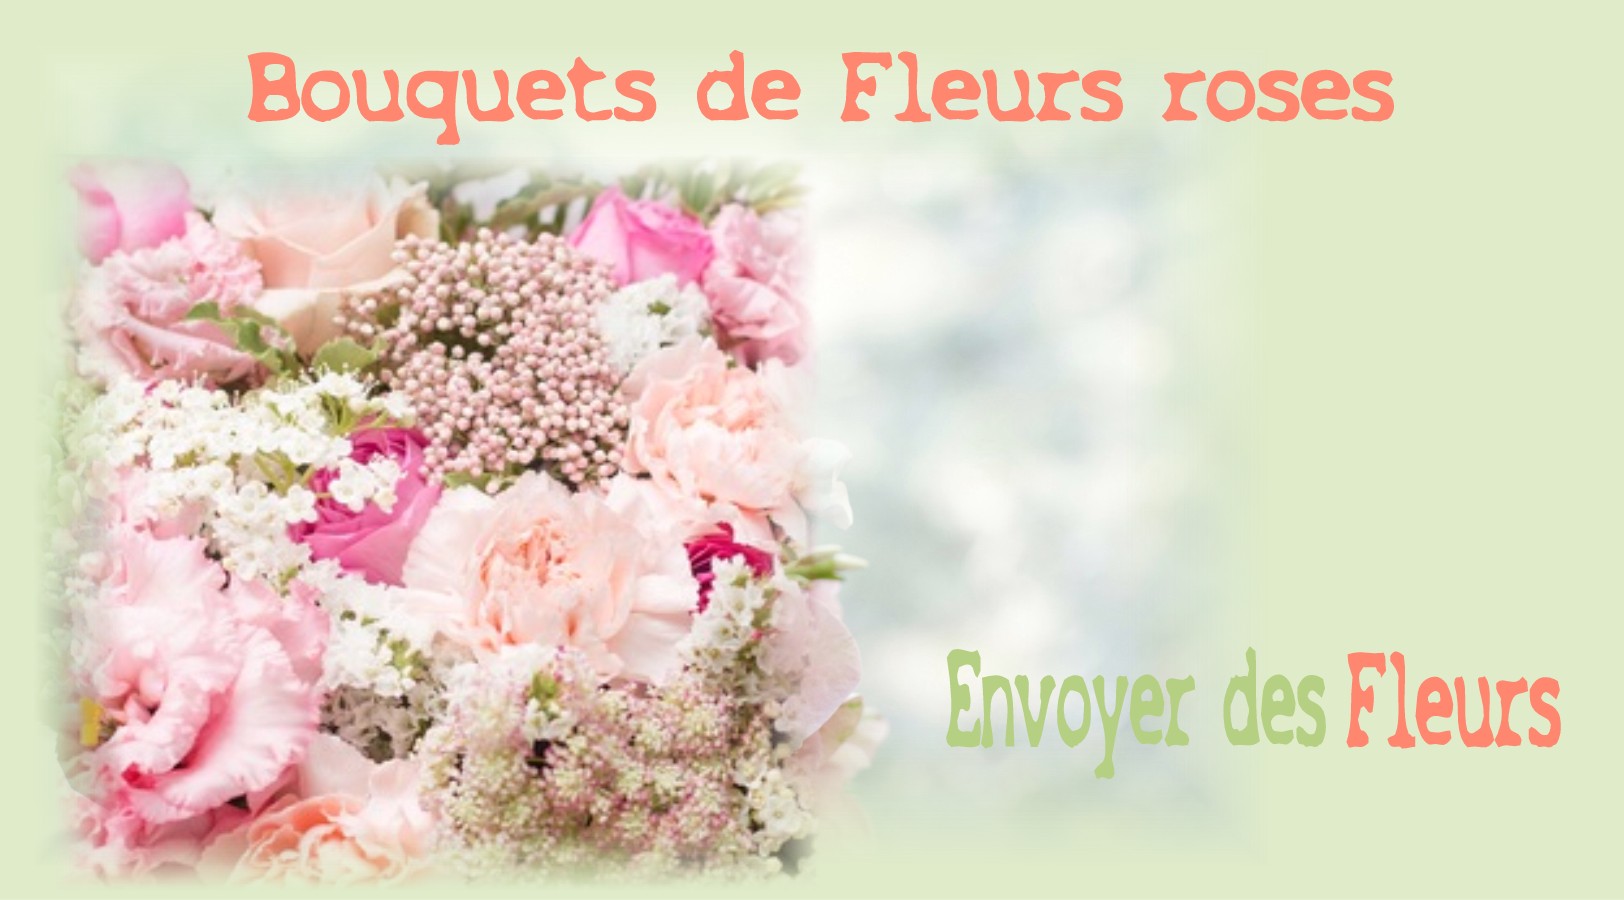 BOUQUETS DE FLEURS ROSES - FLEURISTE STRASBOURG (67) - ENVOYER DES FLEURS